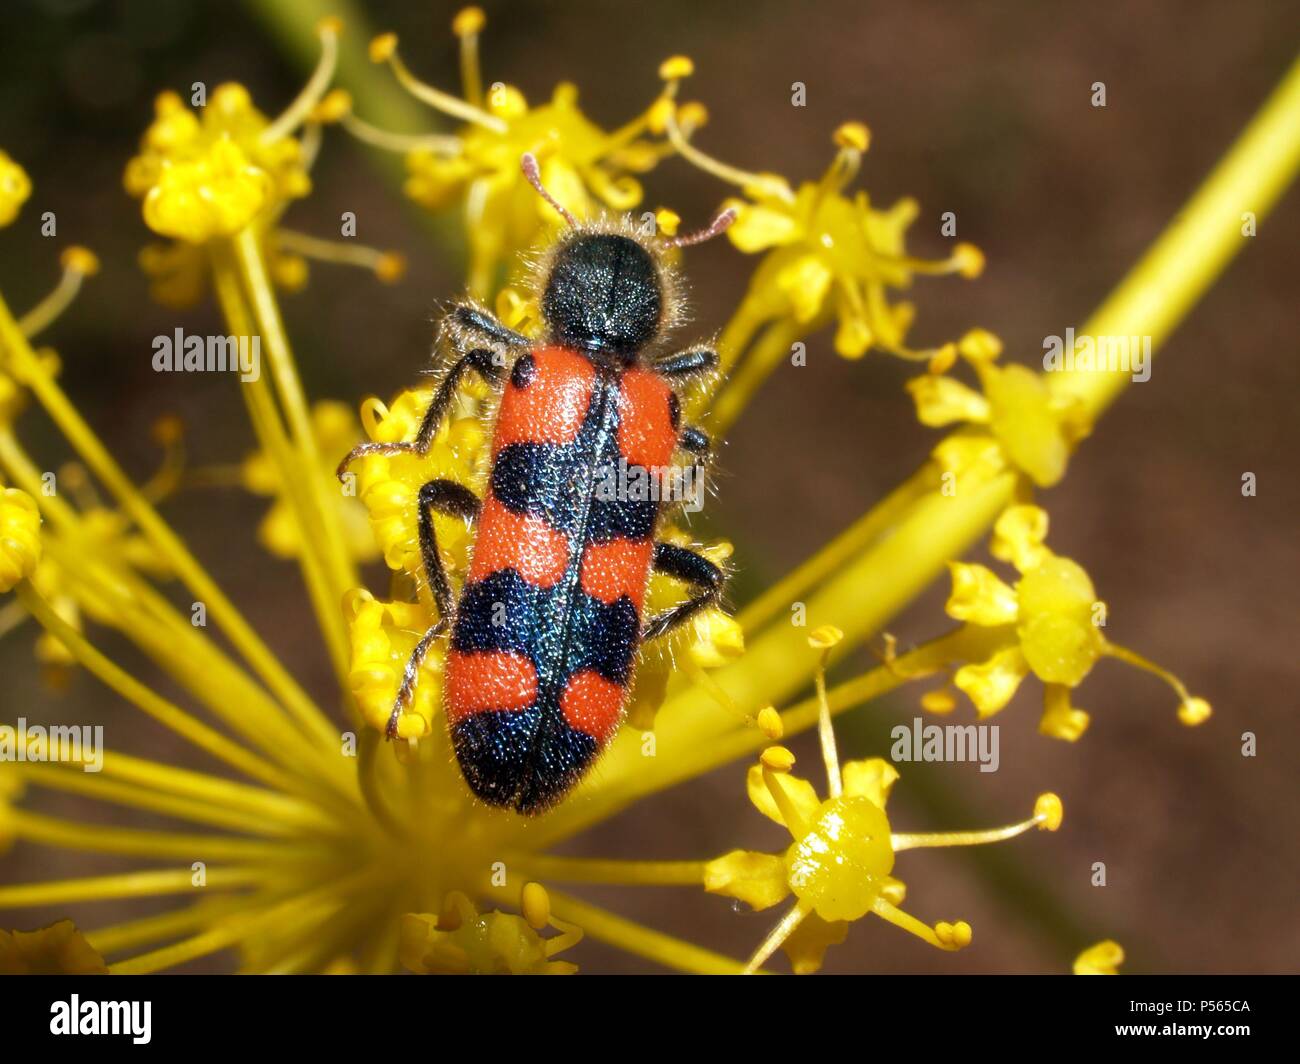 TRICHODES APIARIUM, libando en una flor. Escarabajo. Stock Photo